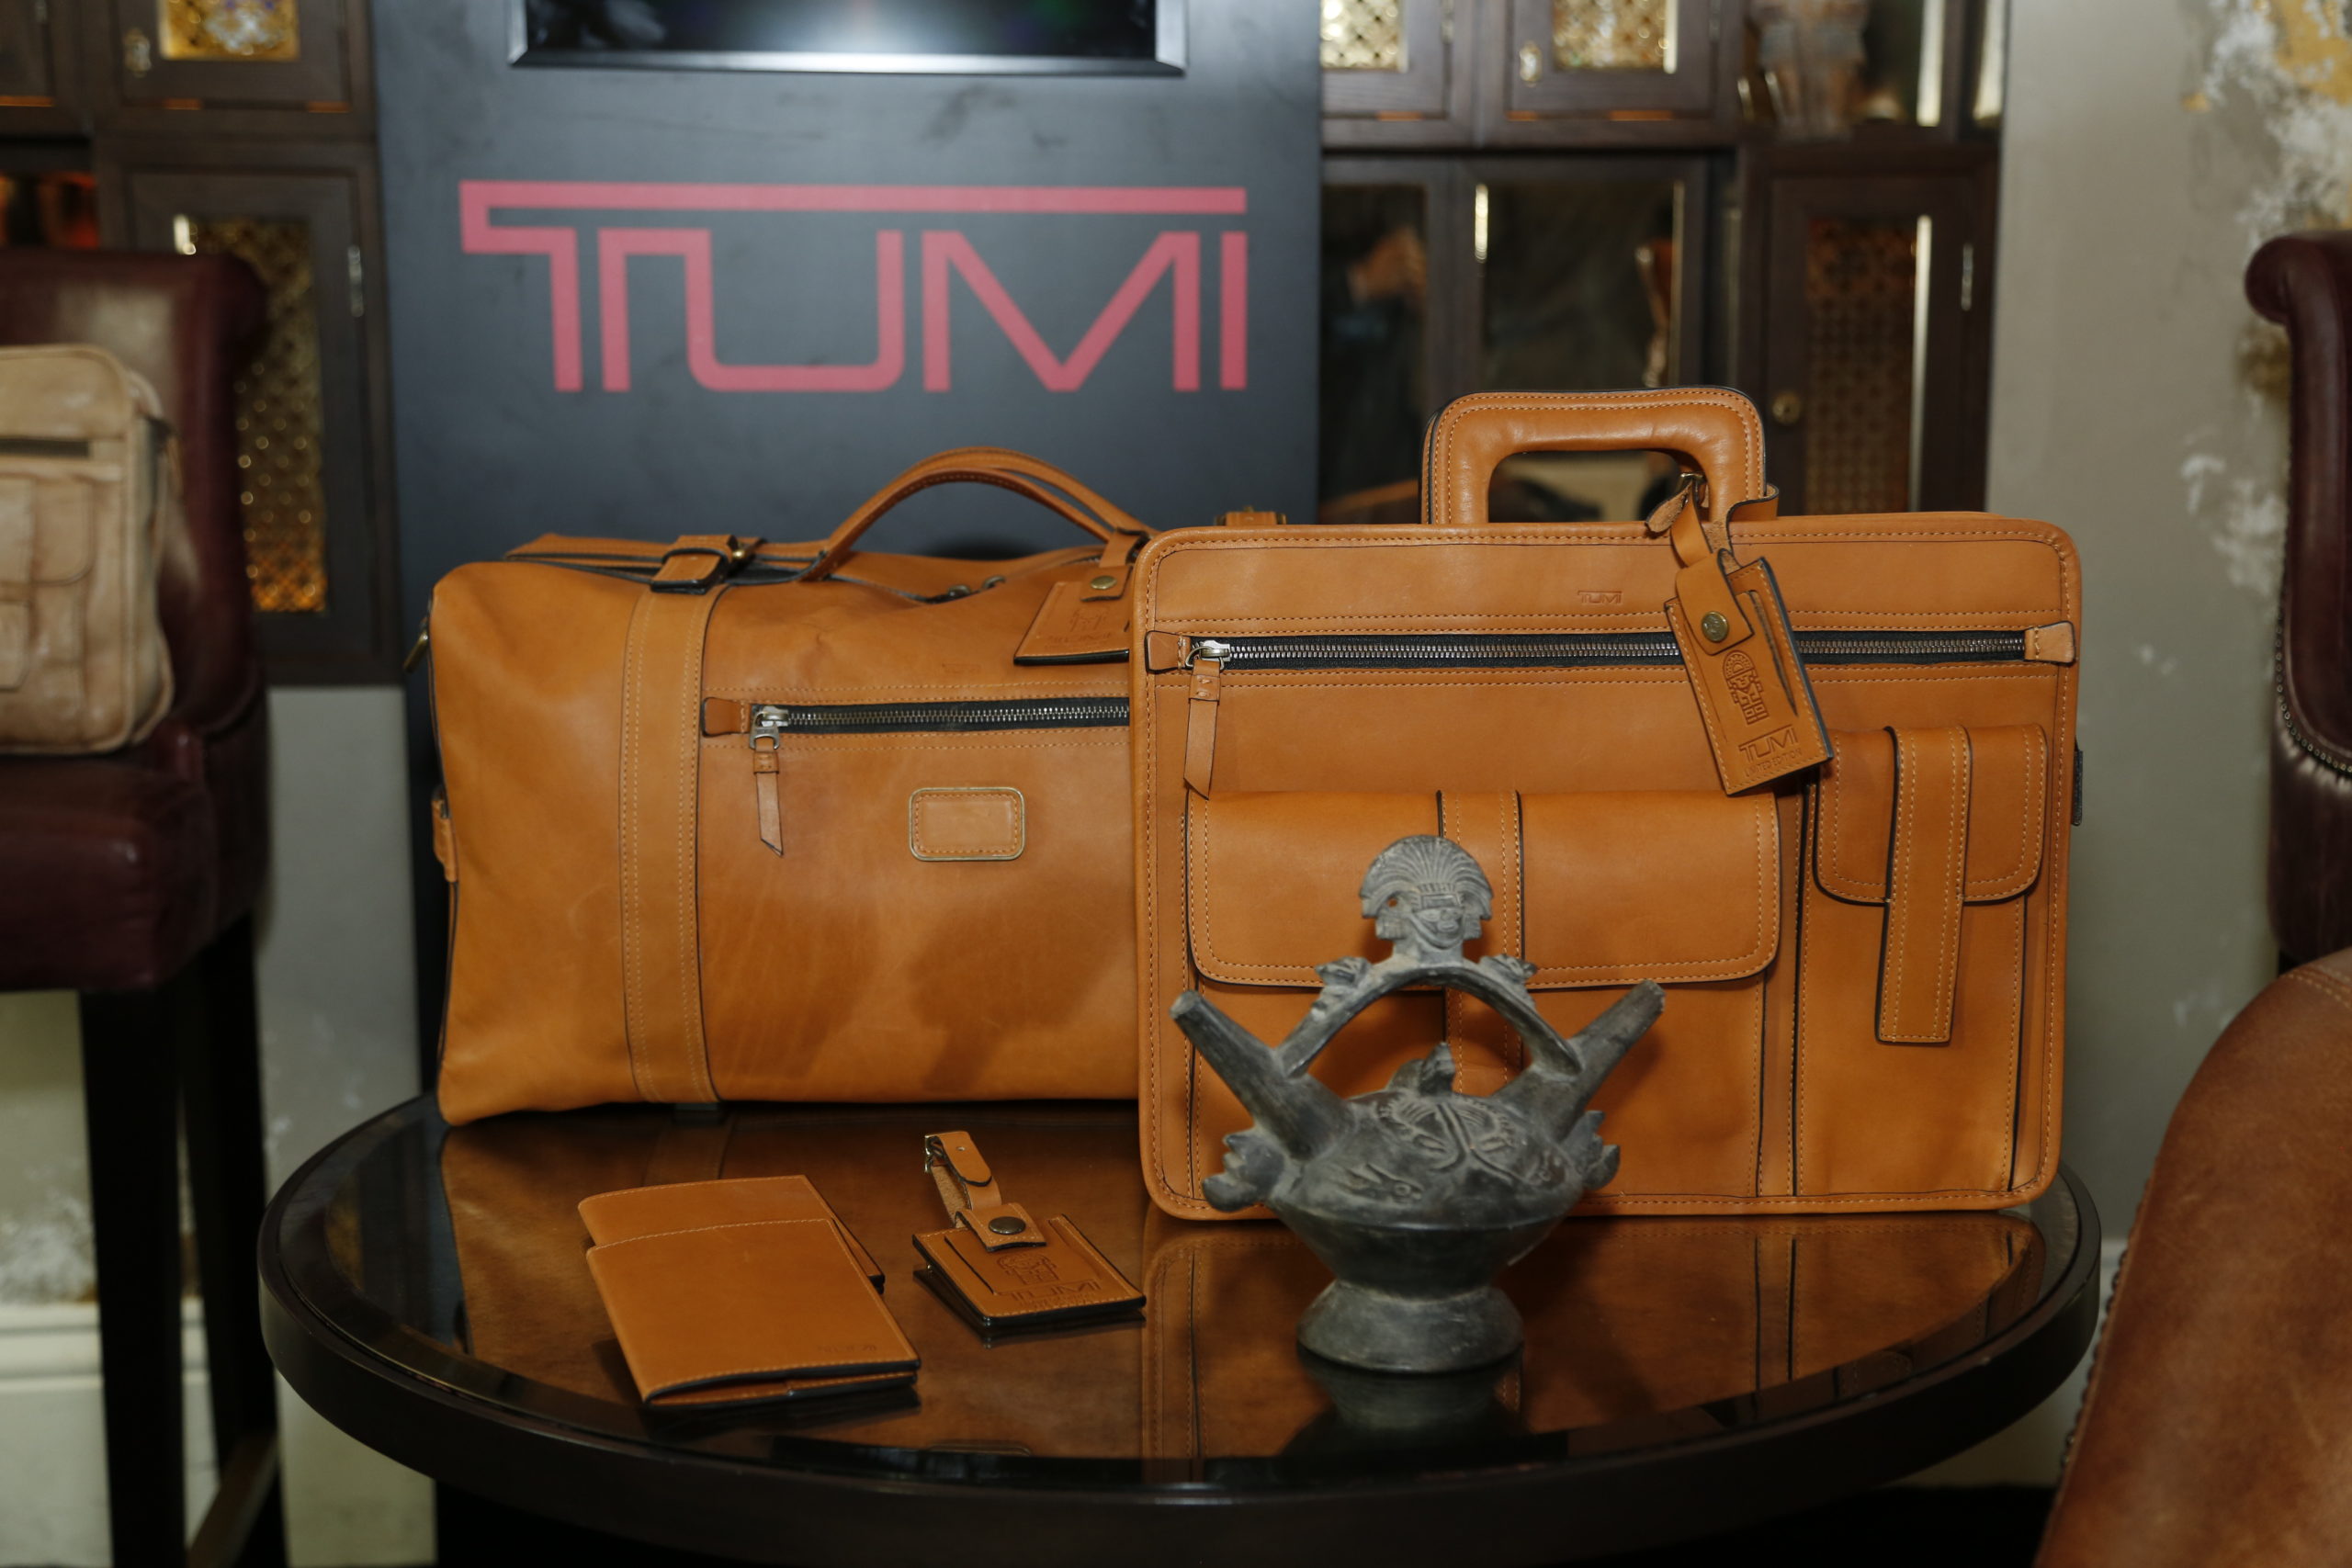 Tumi's 40th Anniversary